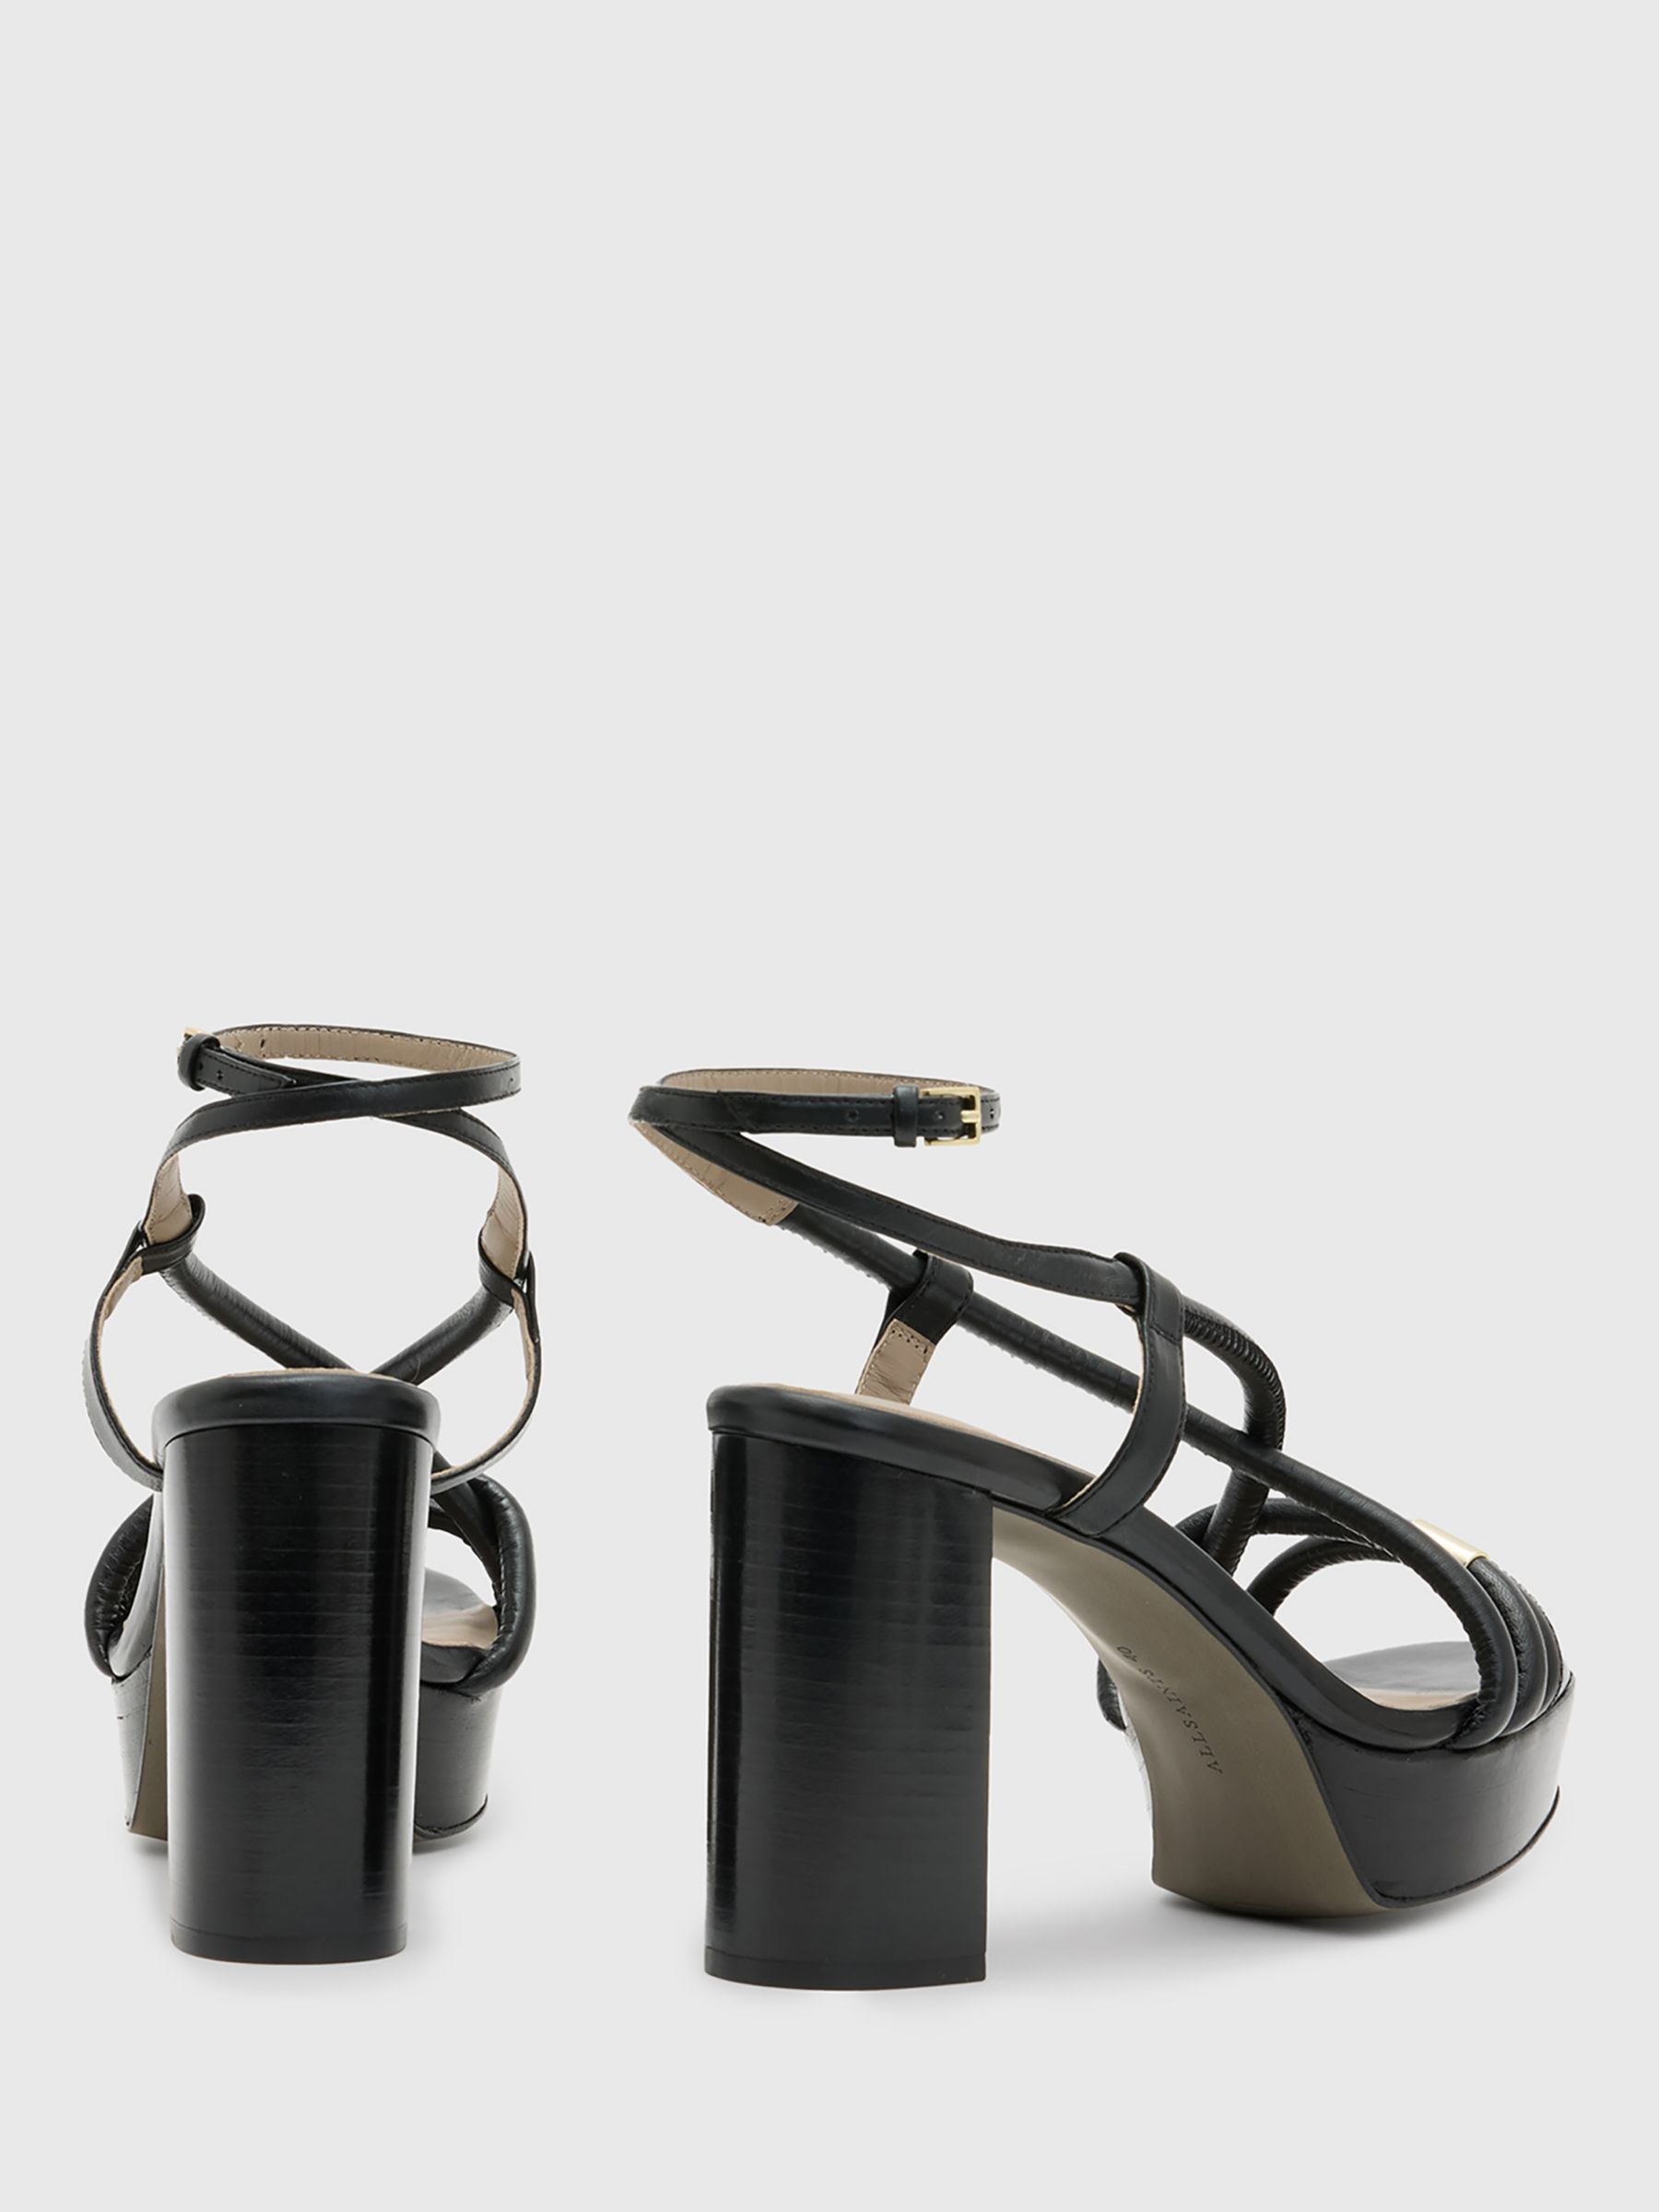 Buy AllSaints Bella Leather Platform Sandals Online at johnlewis.com